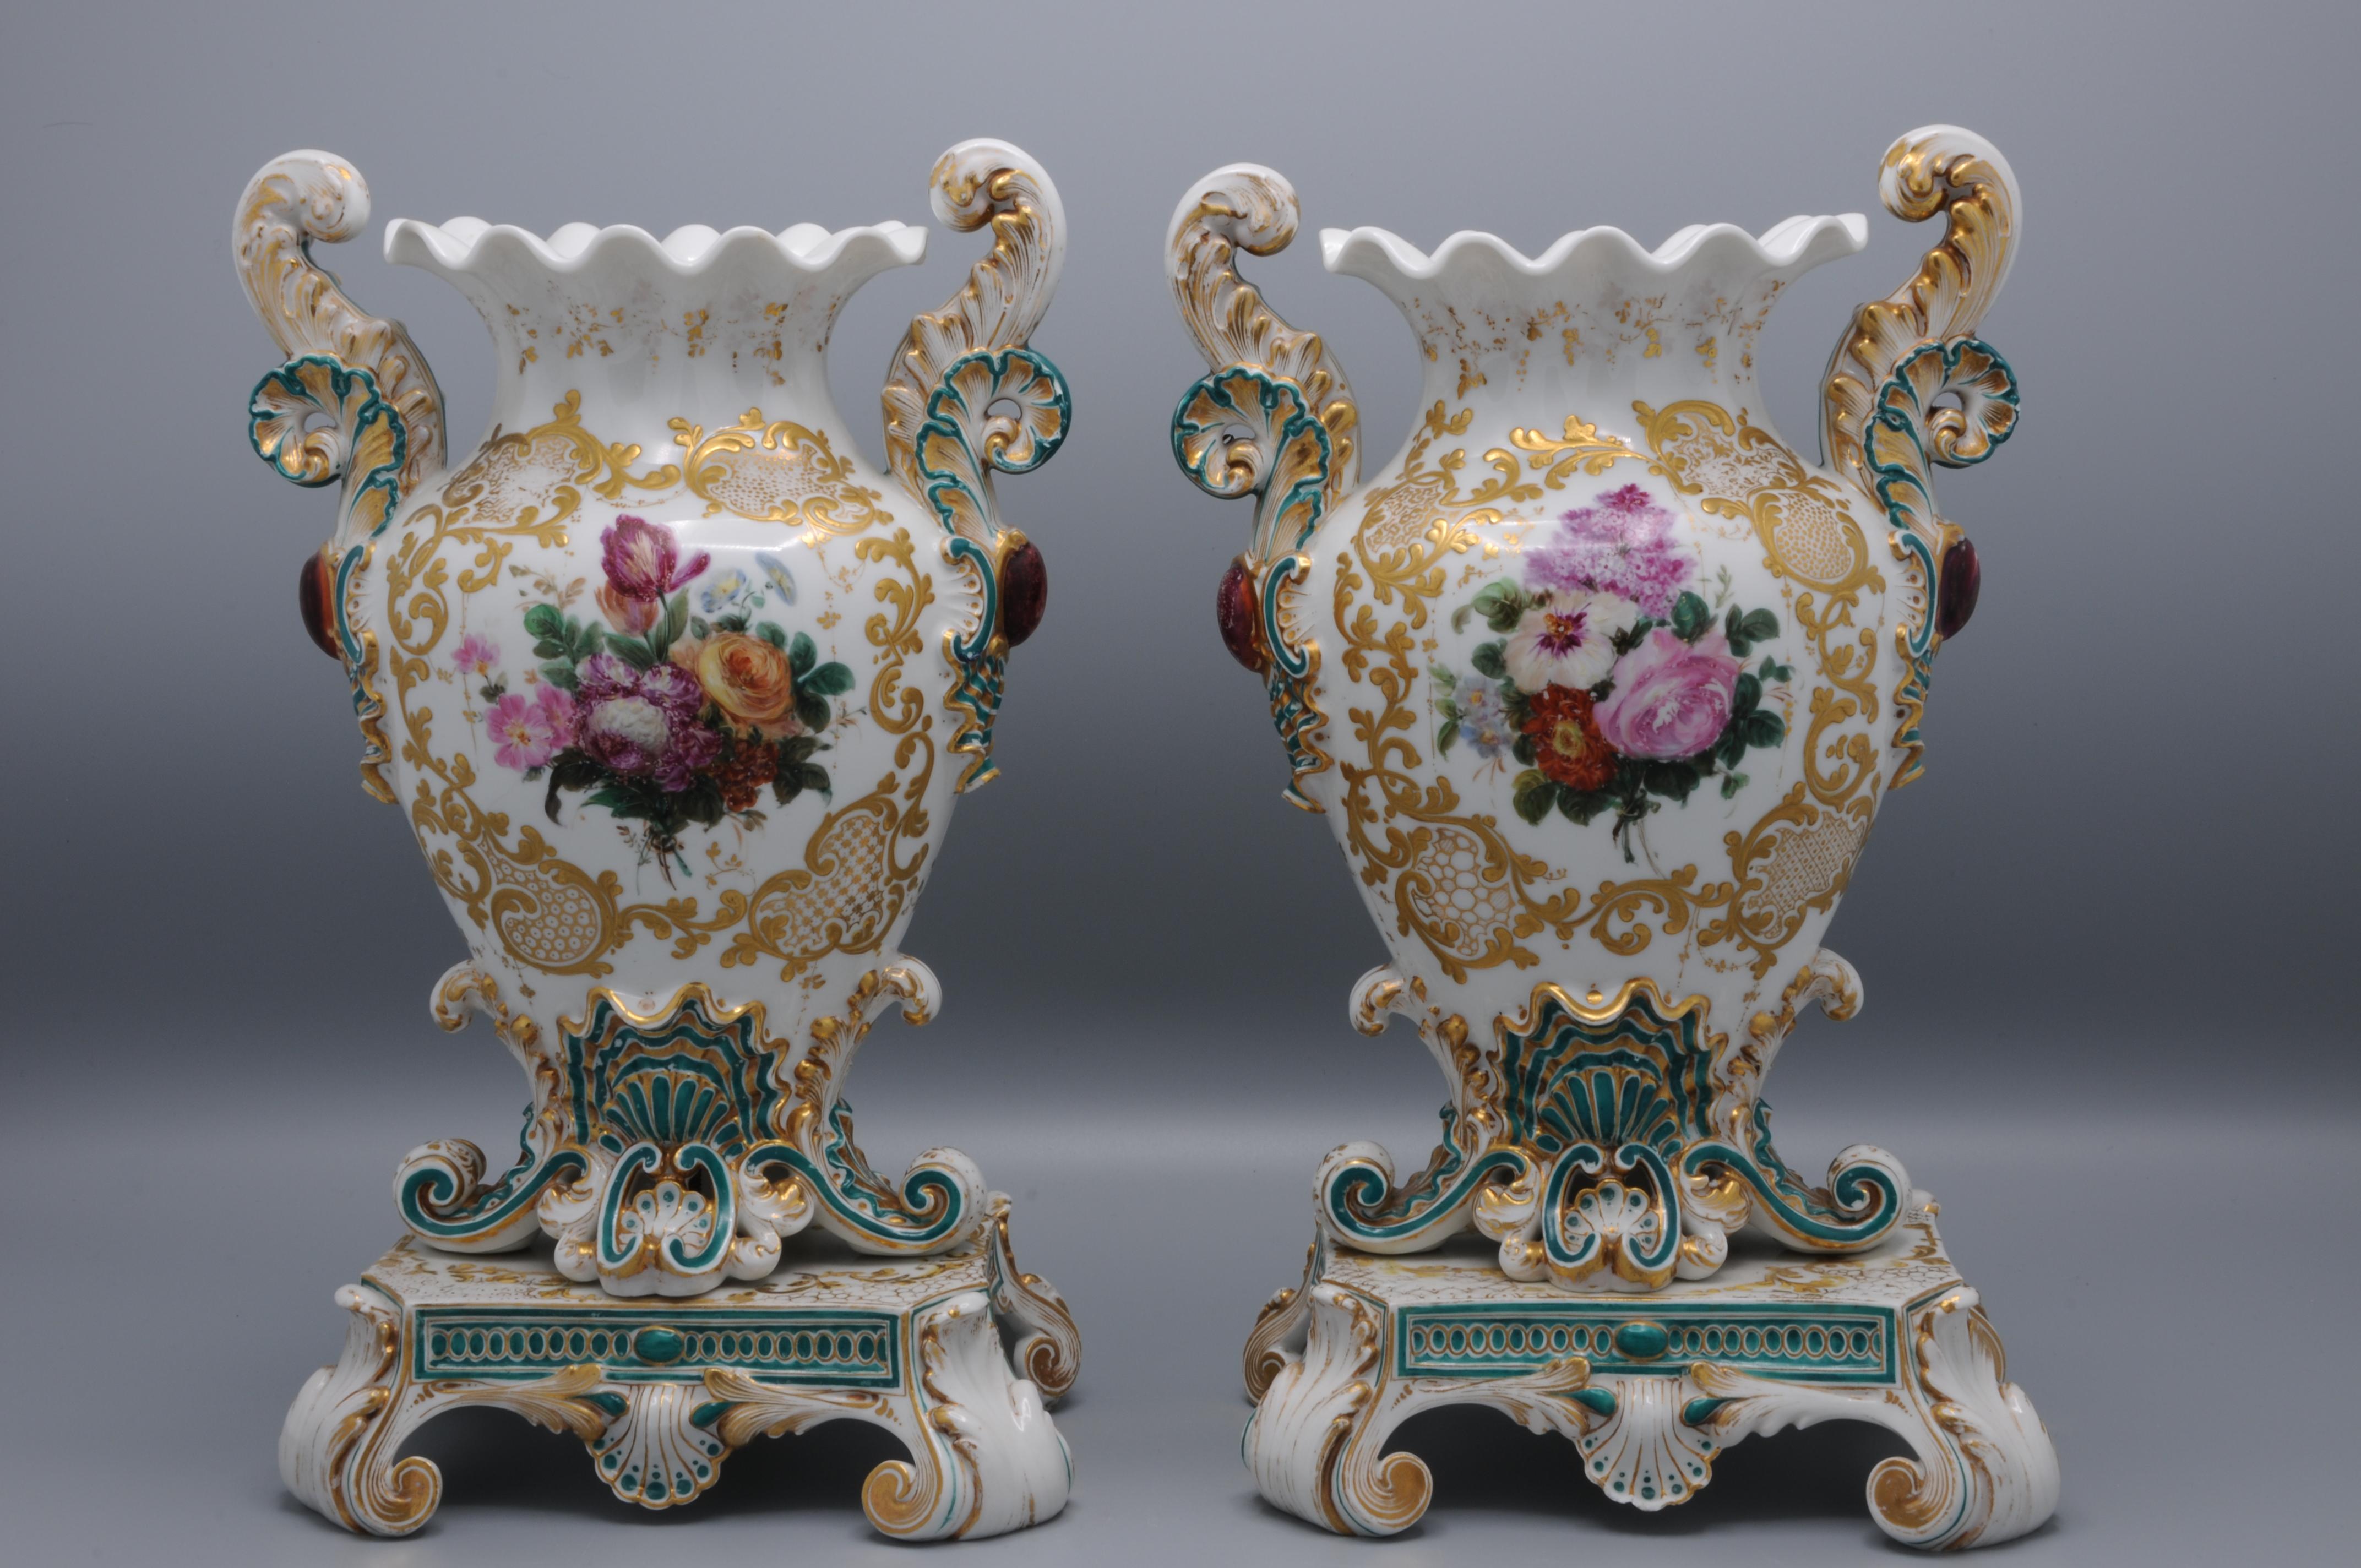 Paire de vases romantiques français très ornés par Jacob Petit, Paris 
De forme balustre, les vases en porcelaine blanche sur pied sont ornés de gerbes de fleurs à l'intérieur d'une bordure d'acanthes et de coquillages en relief et dorés, se